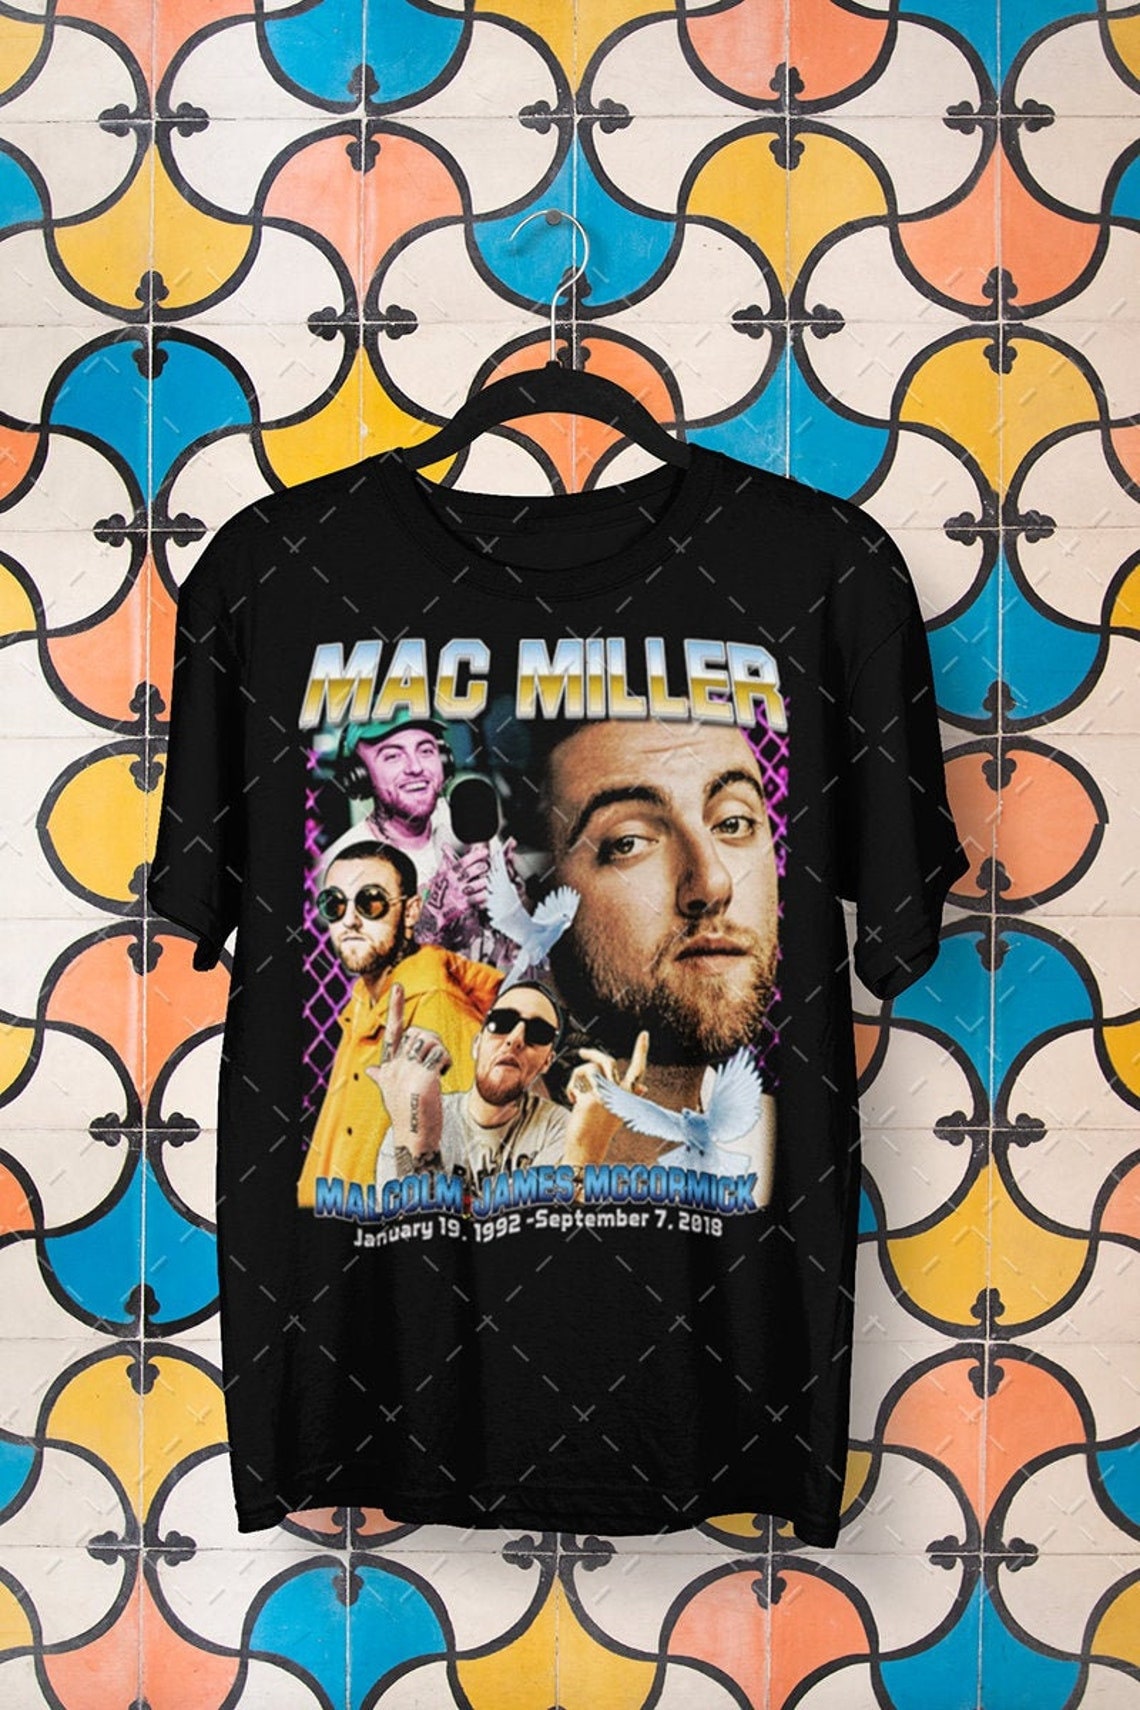 Mac Miller Shirt Mac Miller Inspired Graphic Tee Hip Hop Rap tee tee PLS015 Mac Miller t shirt